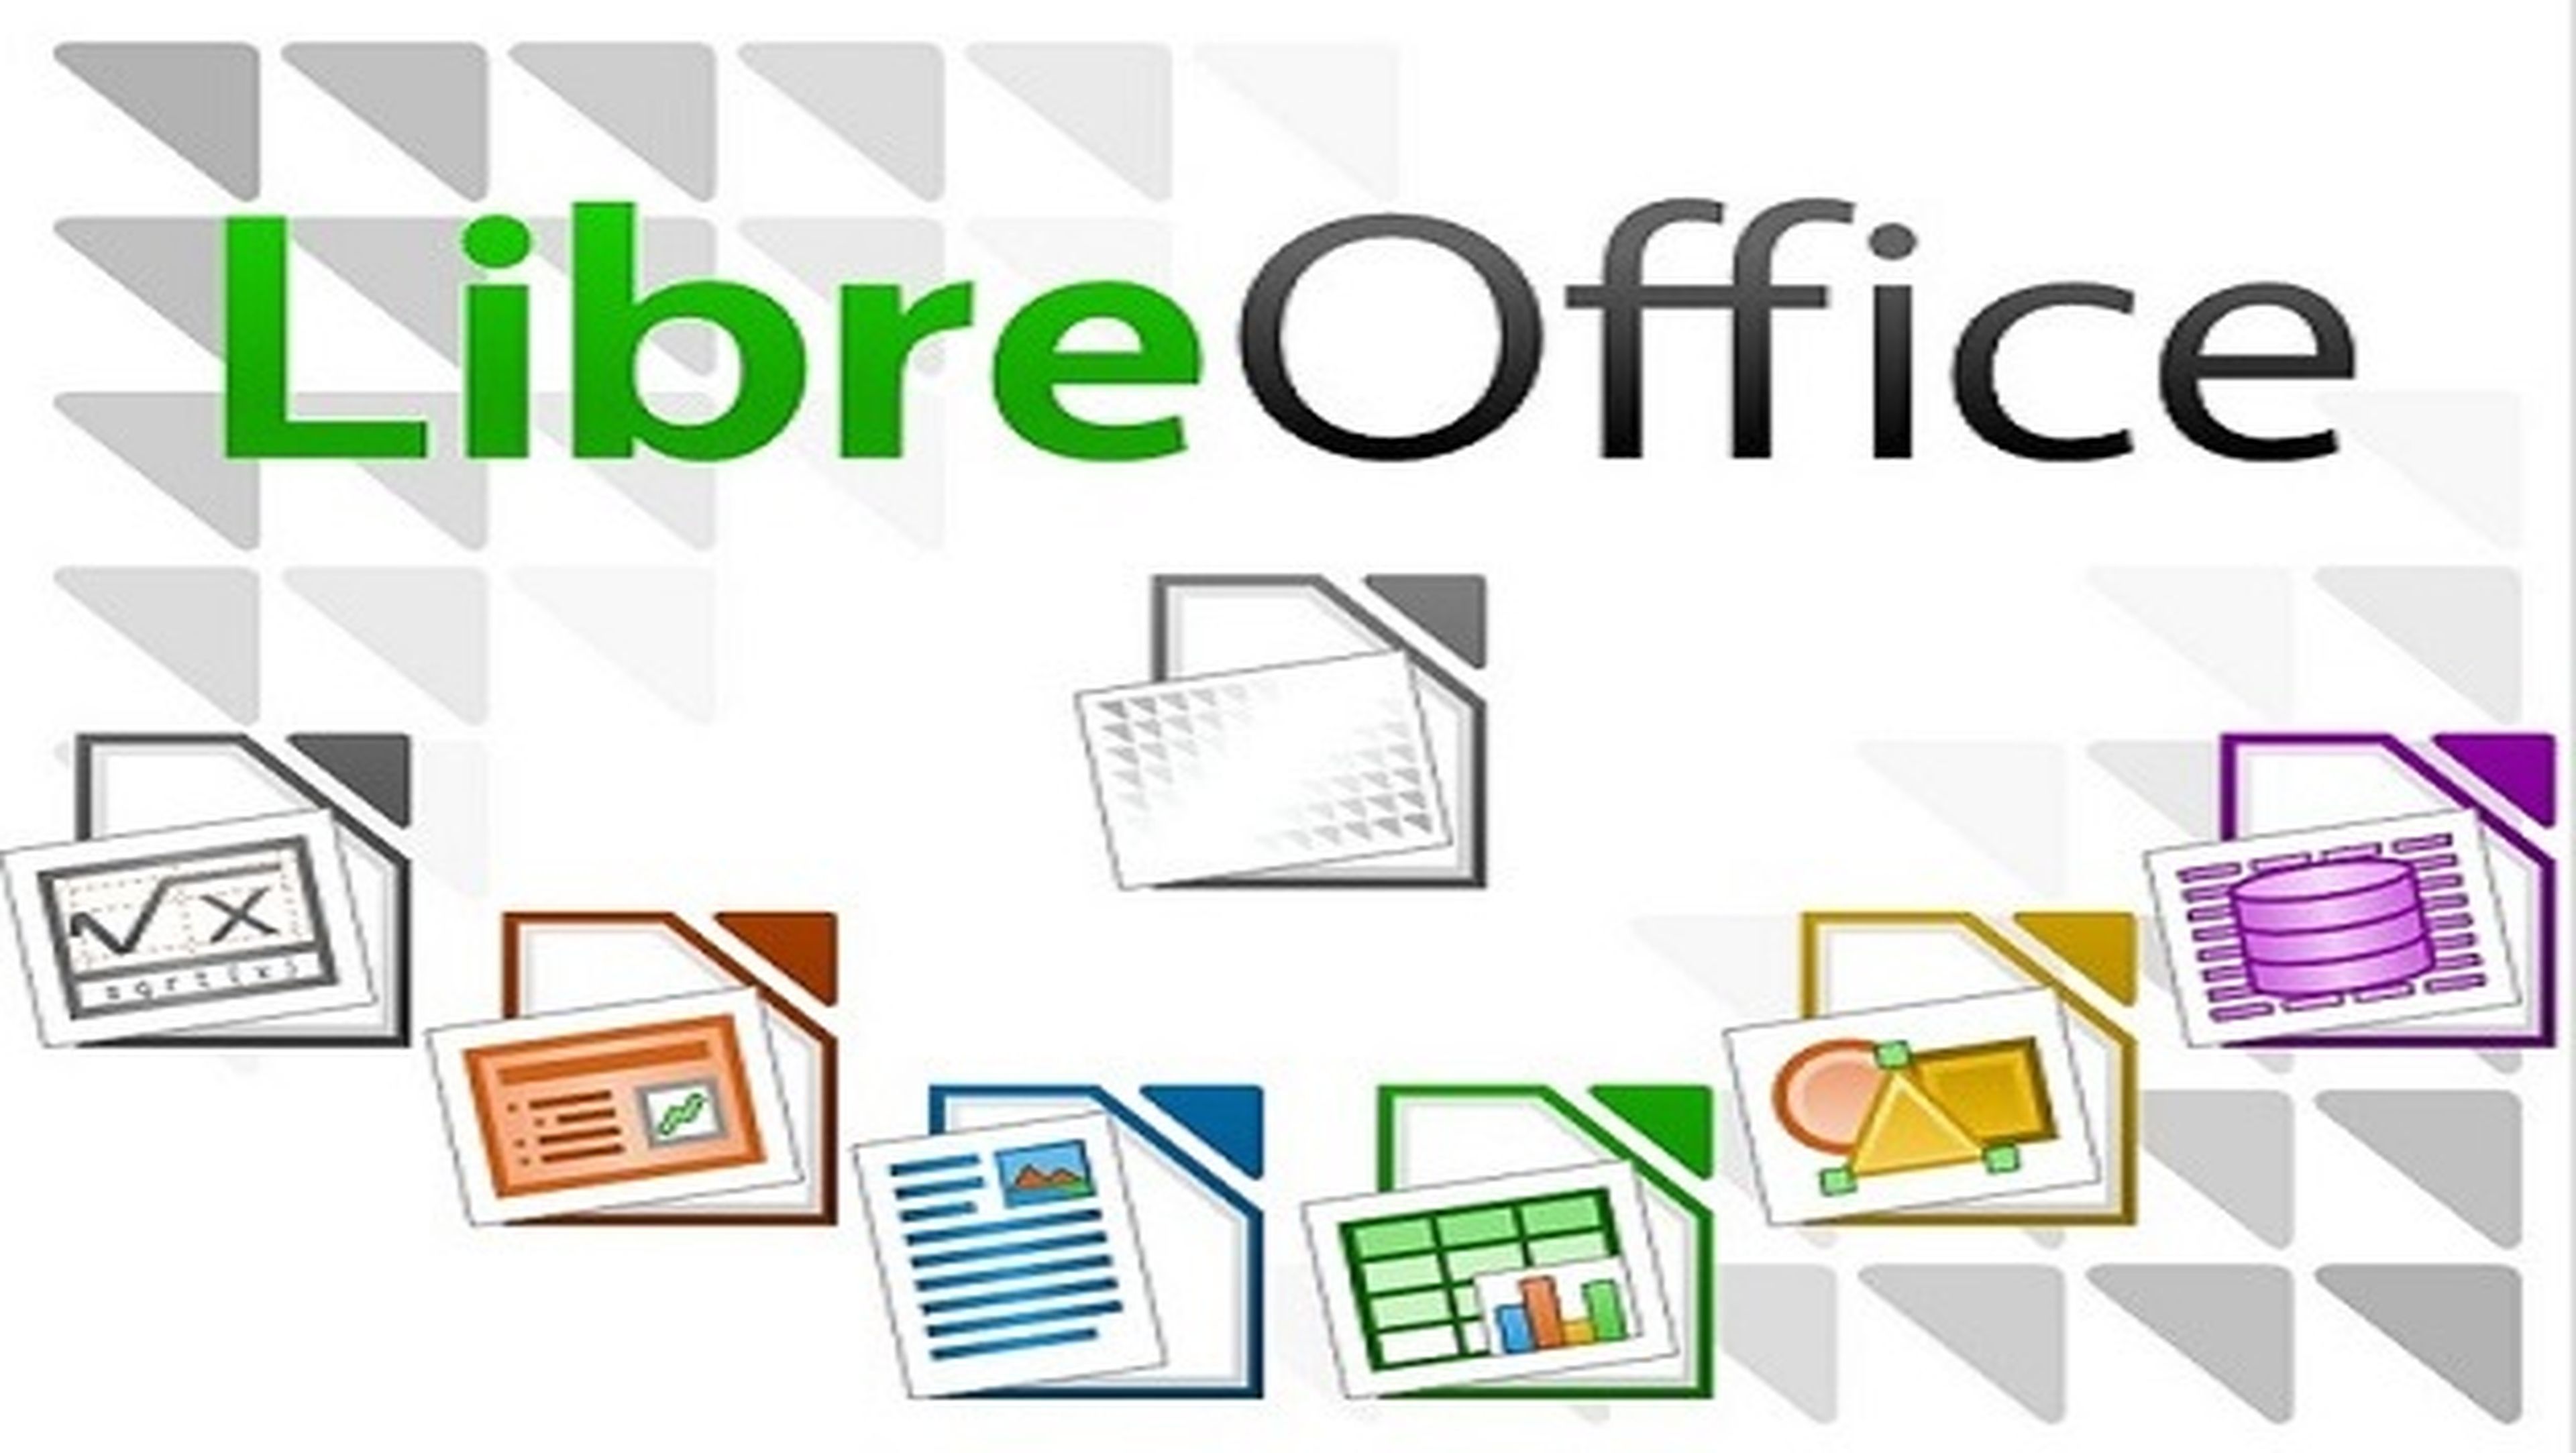 LibreOffice es una suite ofimática completa, gratuita y de código abierto